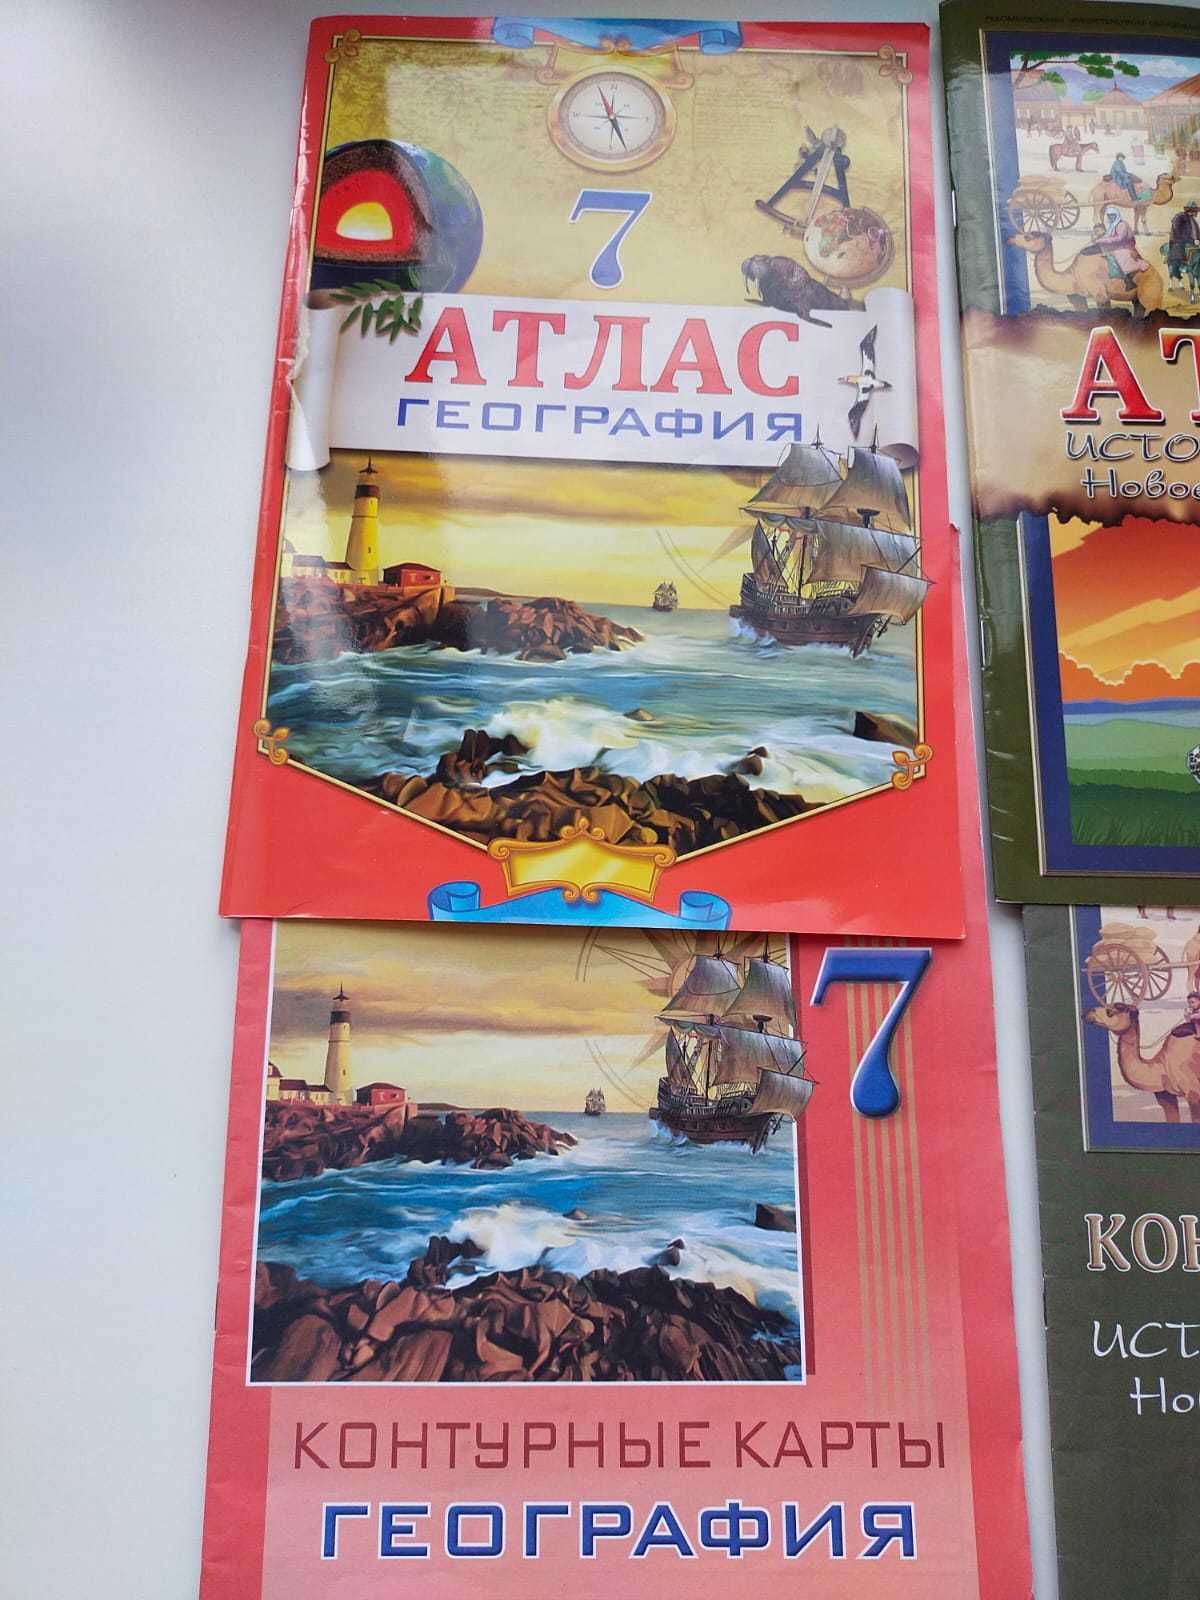 Атласы для 7 класса по географии и истории Казахстана